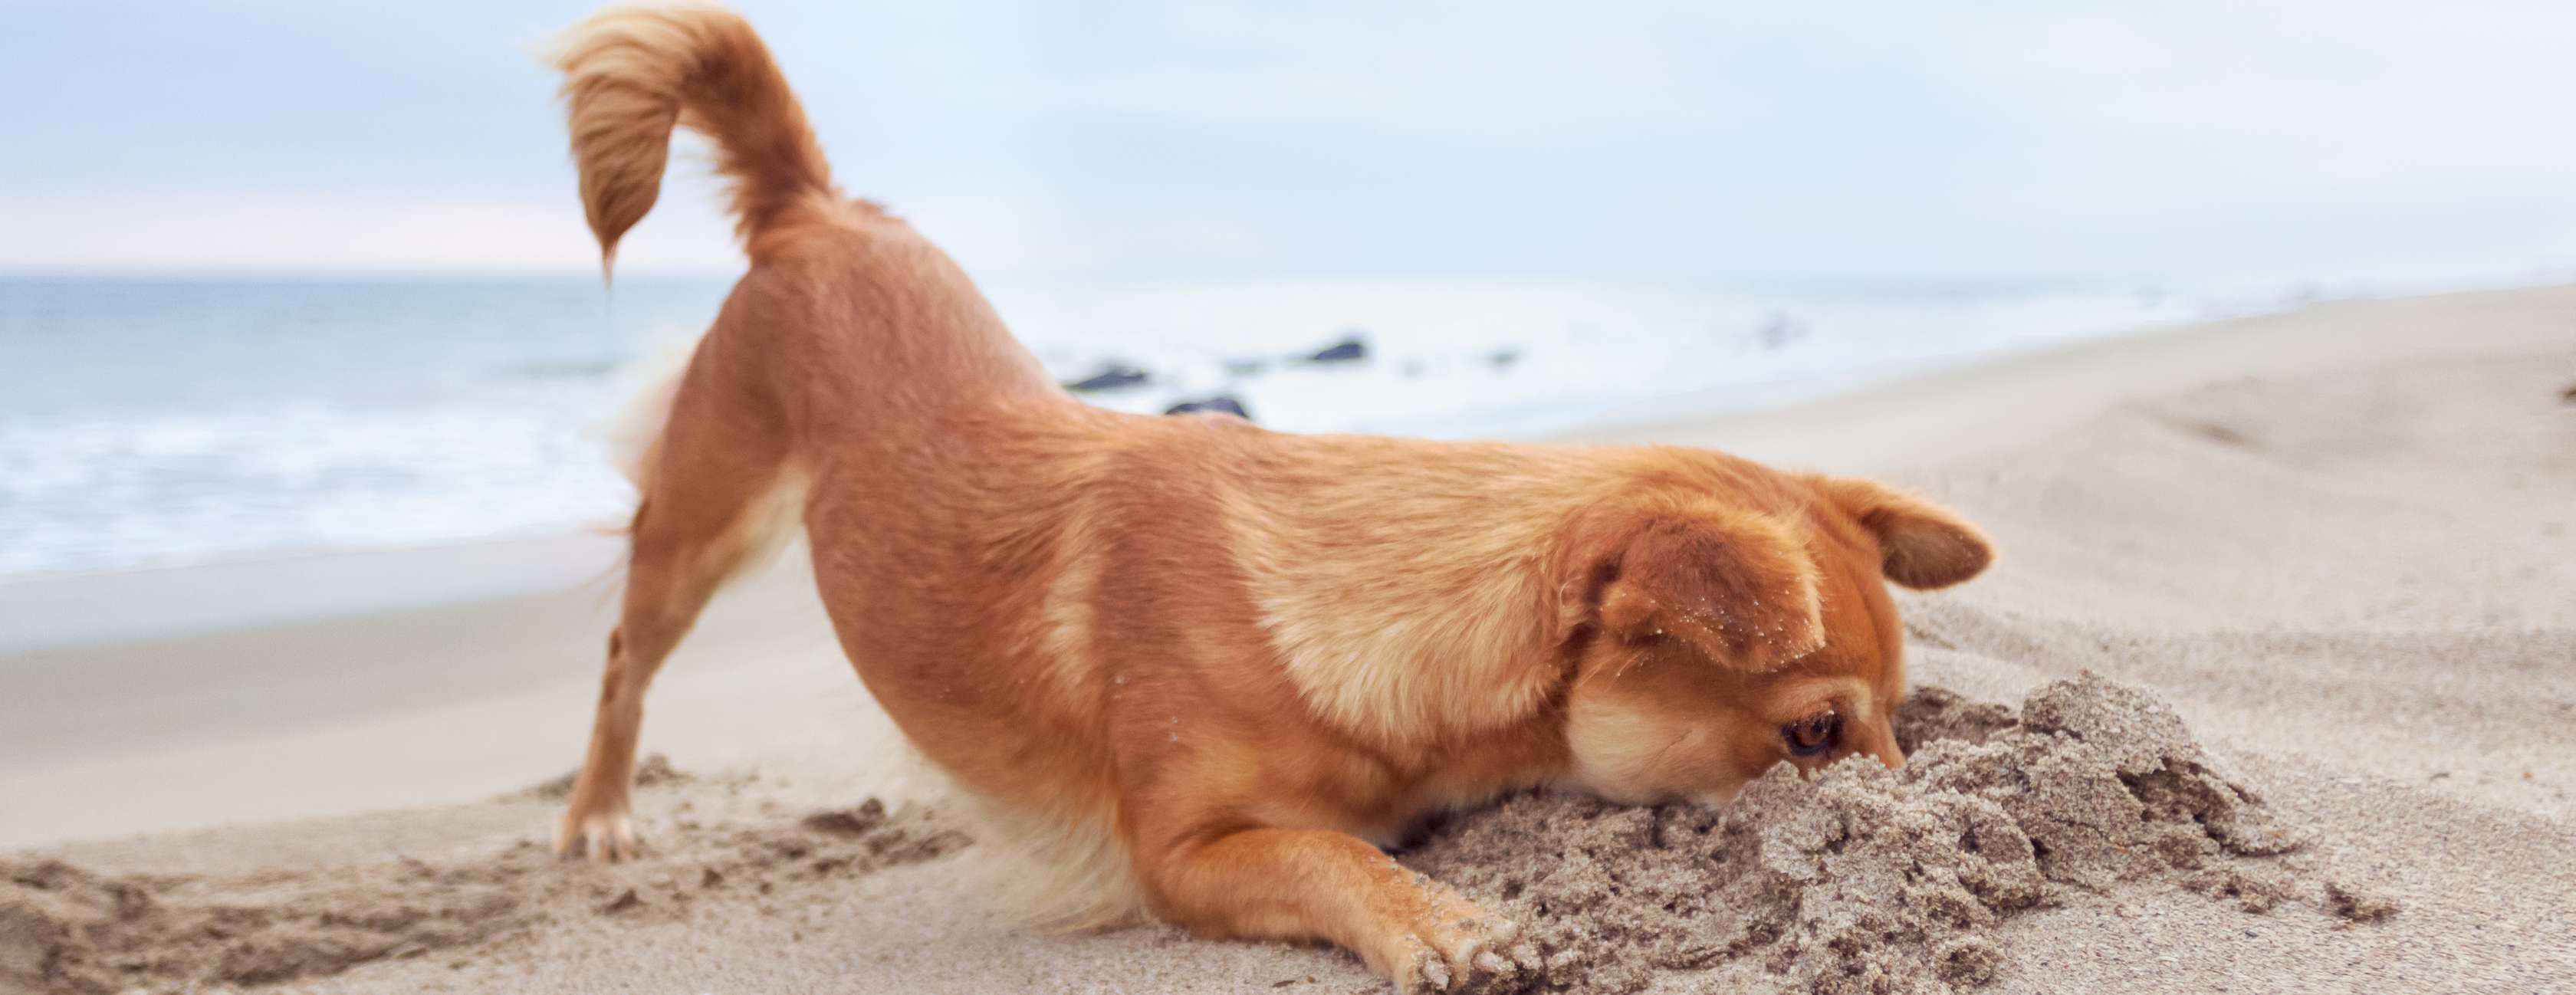 Allianz - Hund buddelt im Sand am Strand